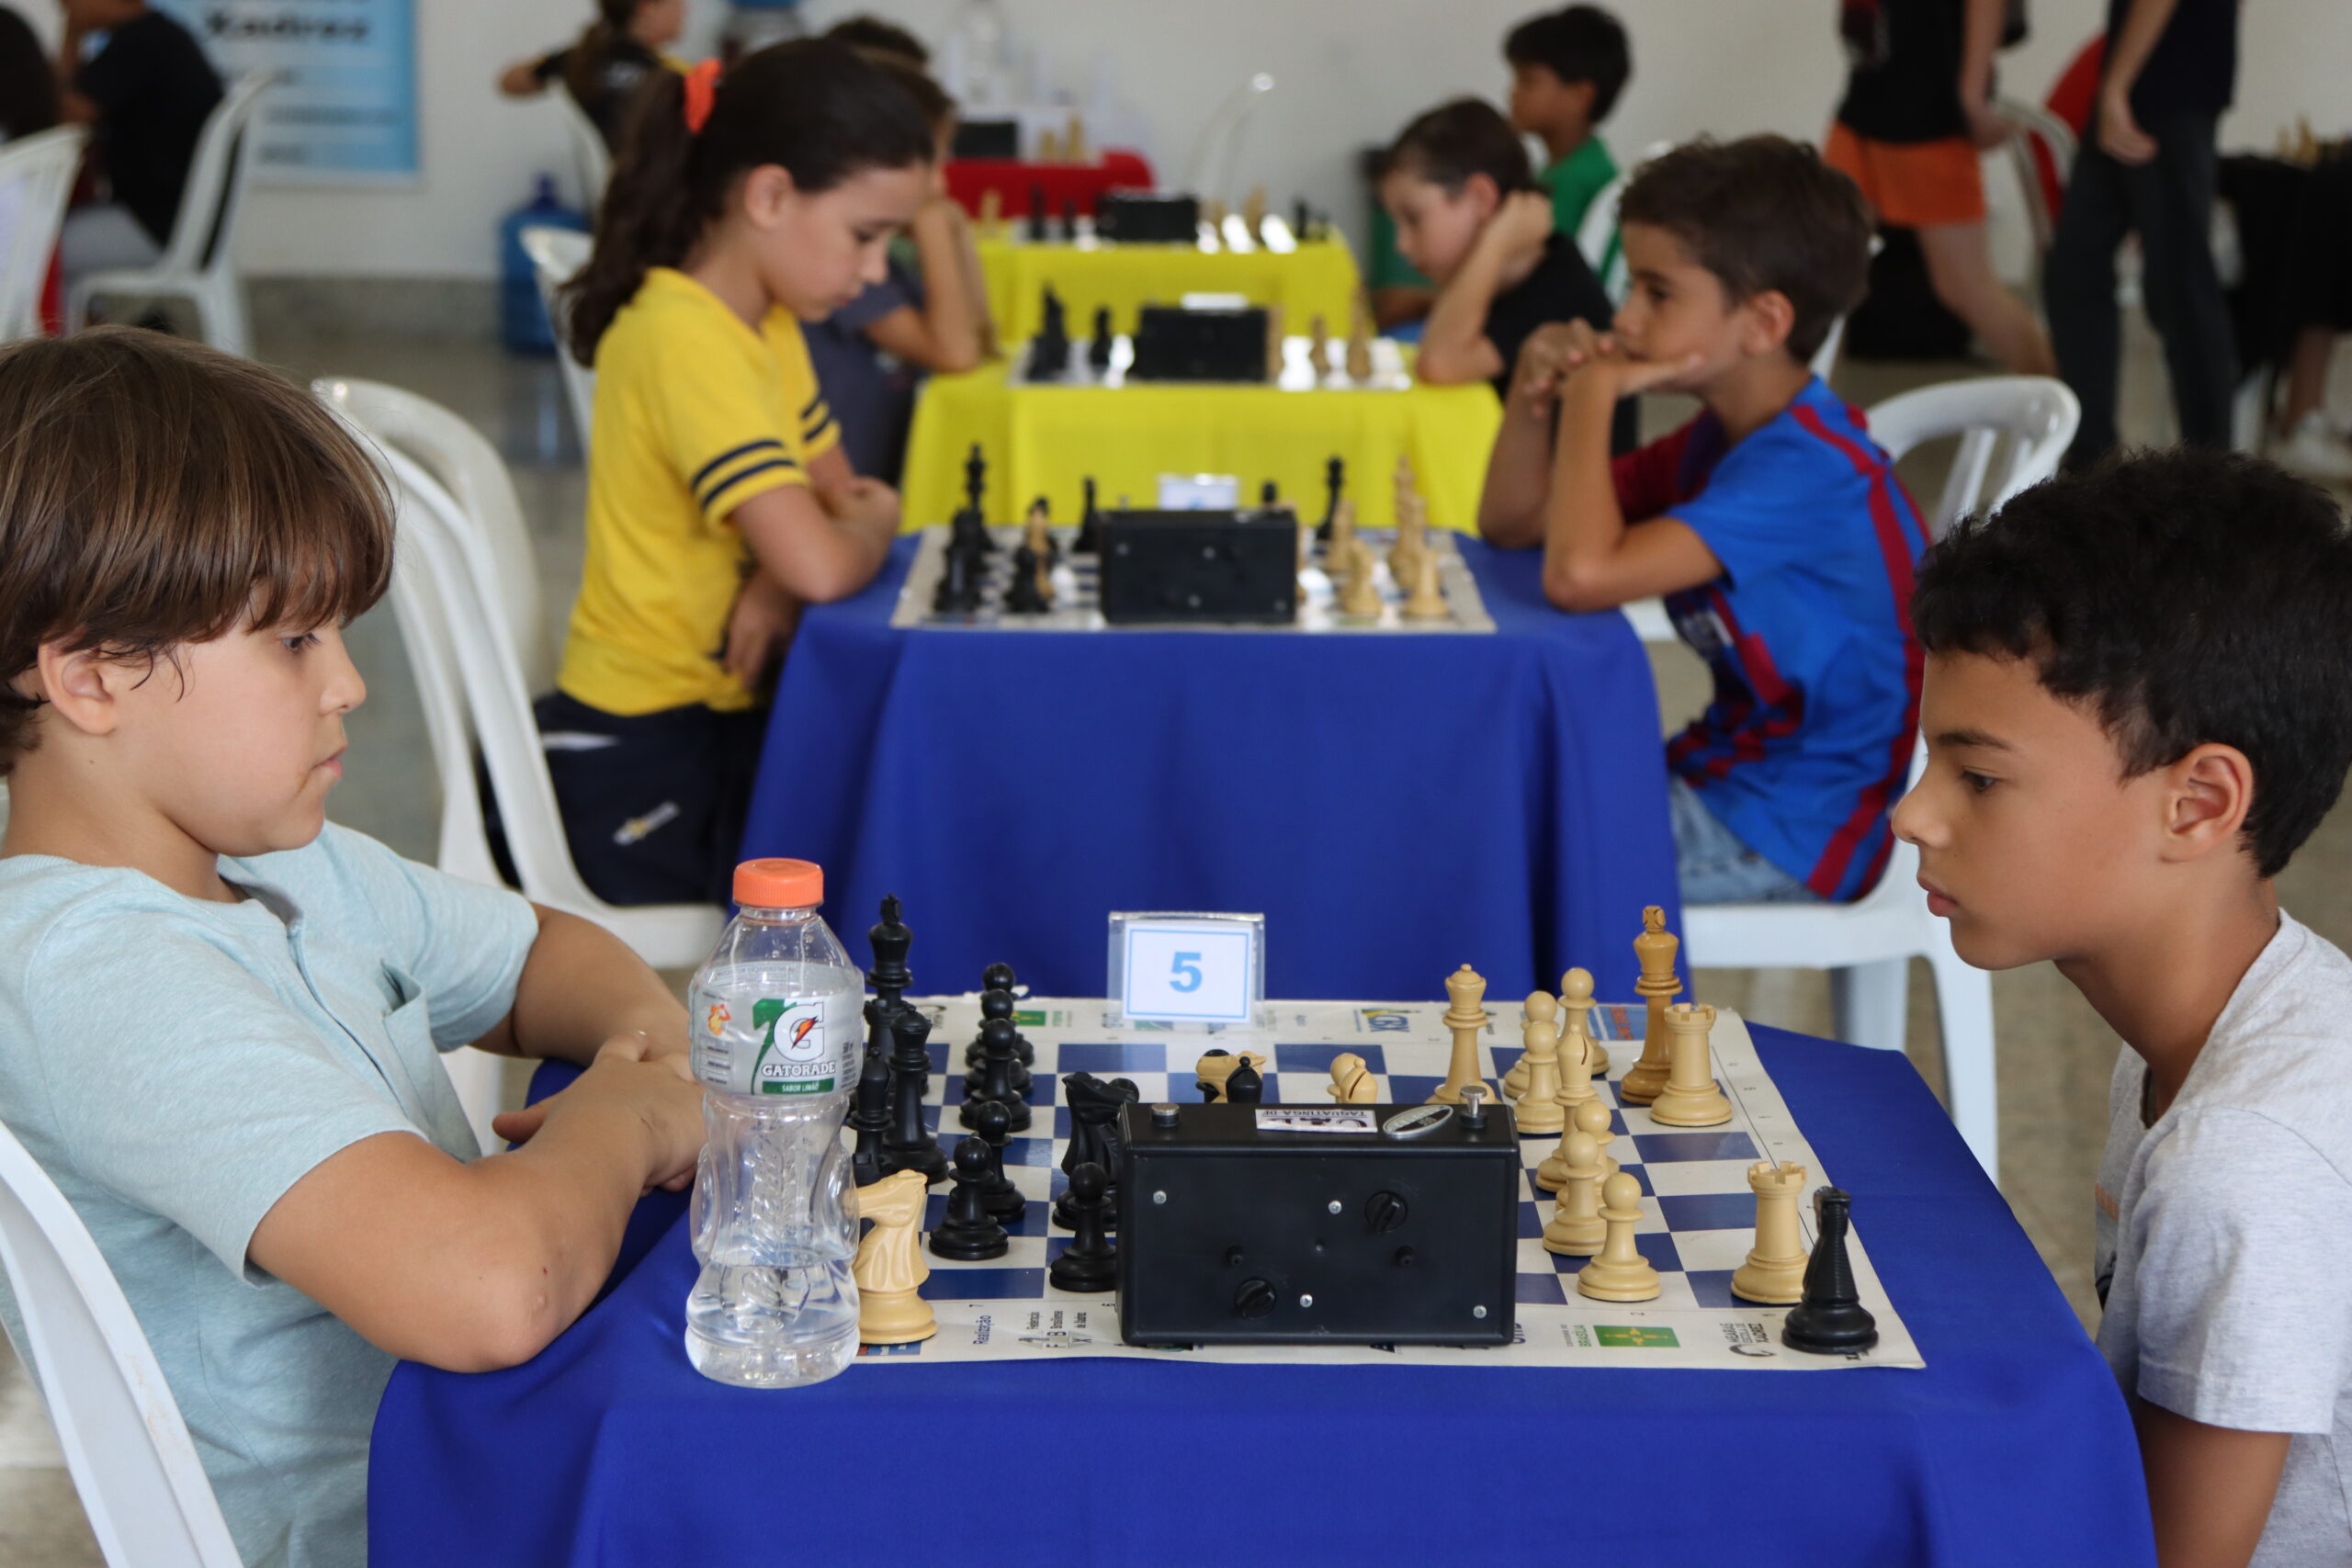 Inscrições para campeonato de xadrez online, no DF, abrem nesta terça-feira  (1º), Distrito Federal